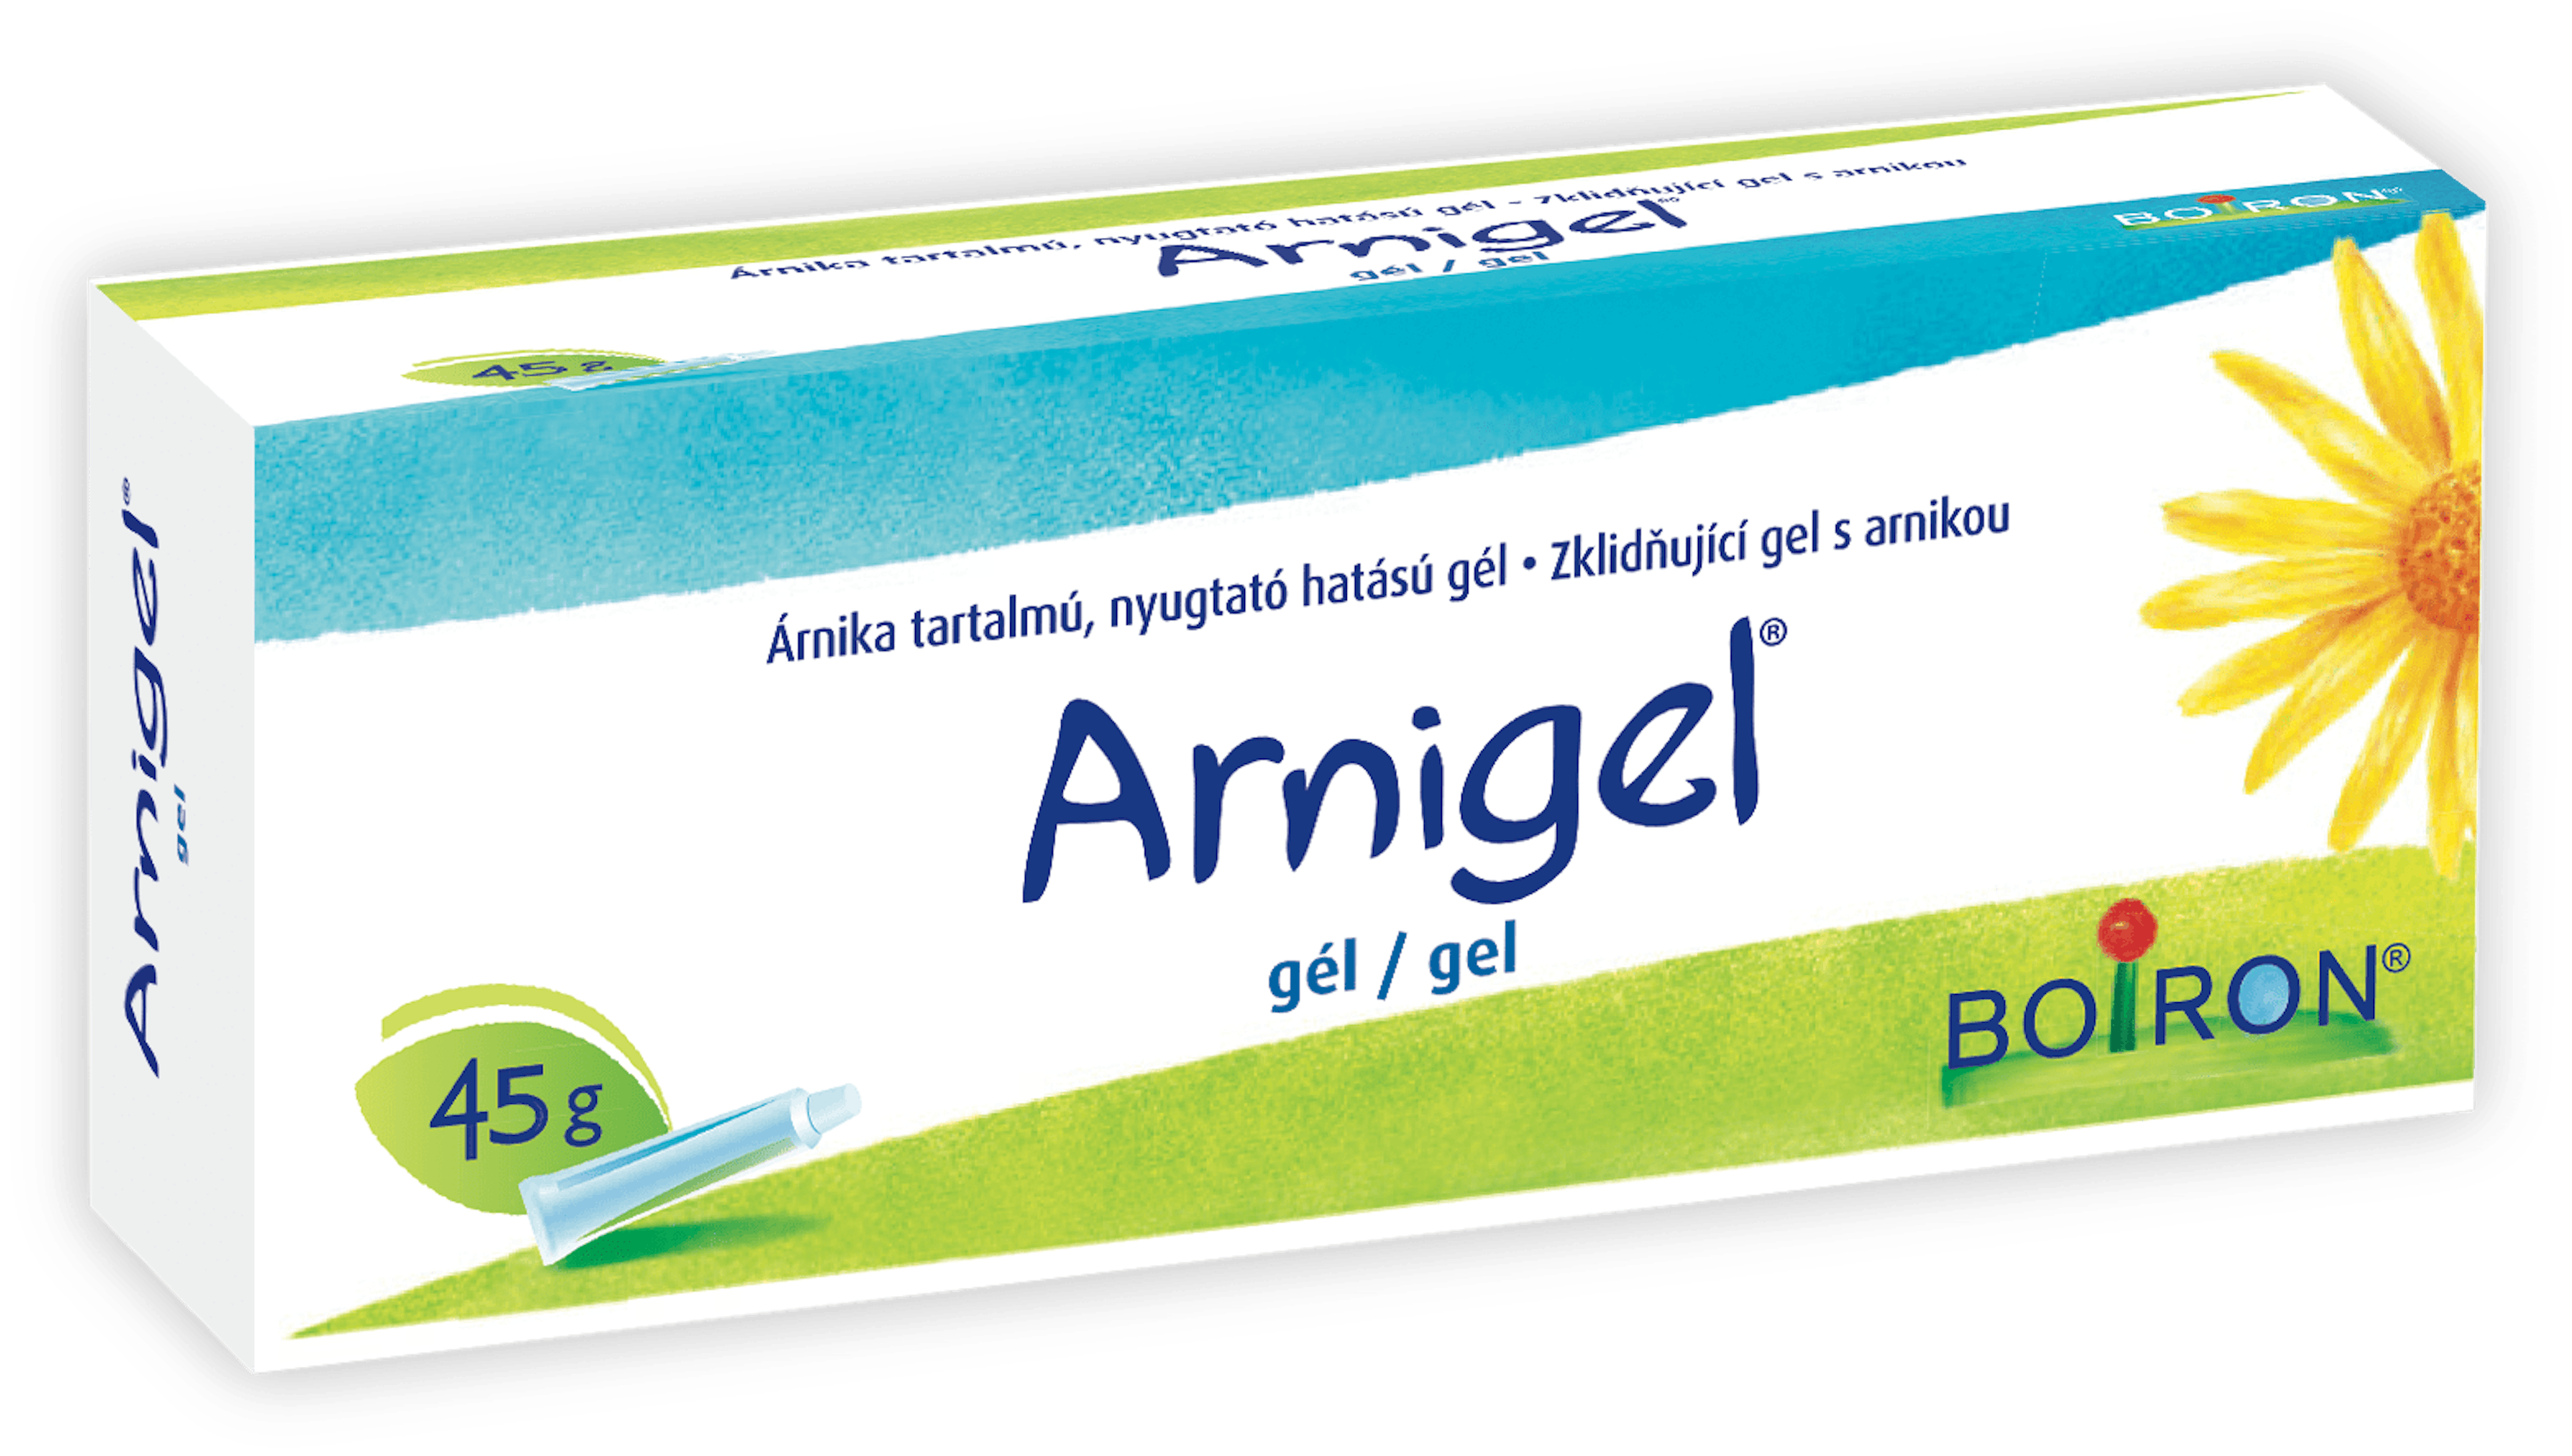 ARNIGEL® obsahuje výtažky z rostliny Arnica montana se zklidňujícími účinky. Zklidňující gel s arnikou. 